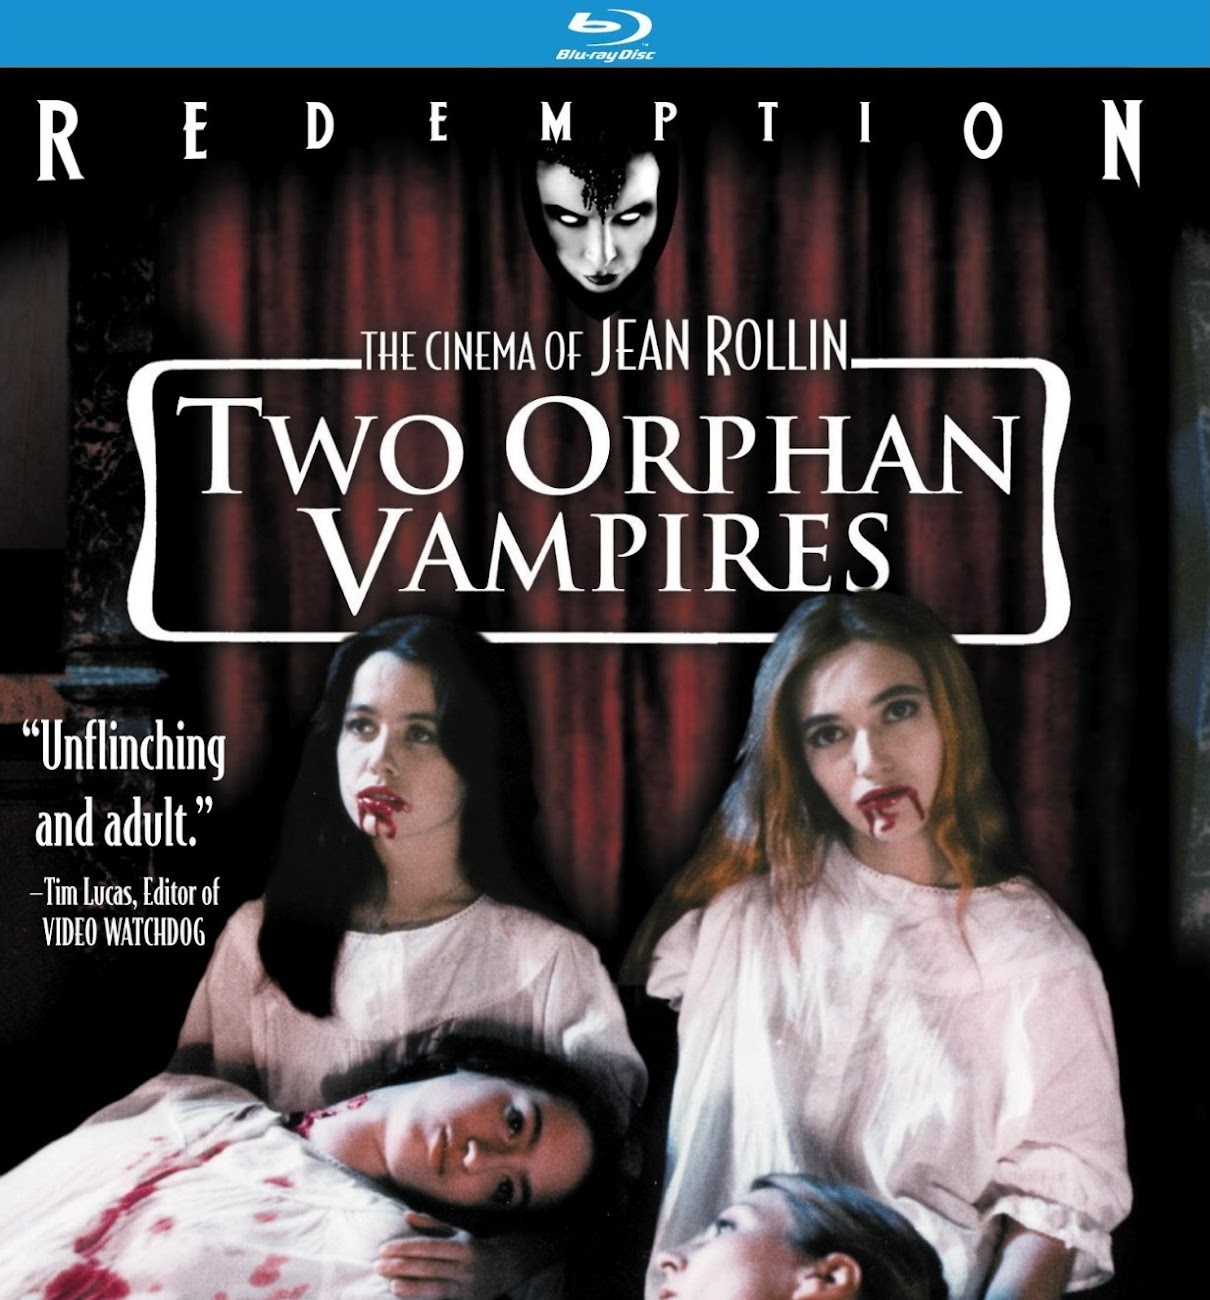 http://3.bp.blogspot.com/-q3IagEd7HIY/UDtyfjvbgVI/AAAAAAAAgr0/XnruH4gUWdQ/s1300/two+orphan+vampires.jpg